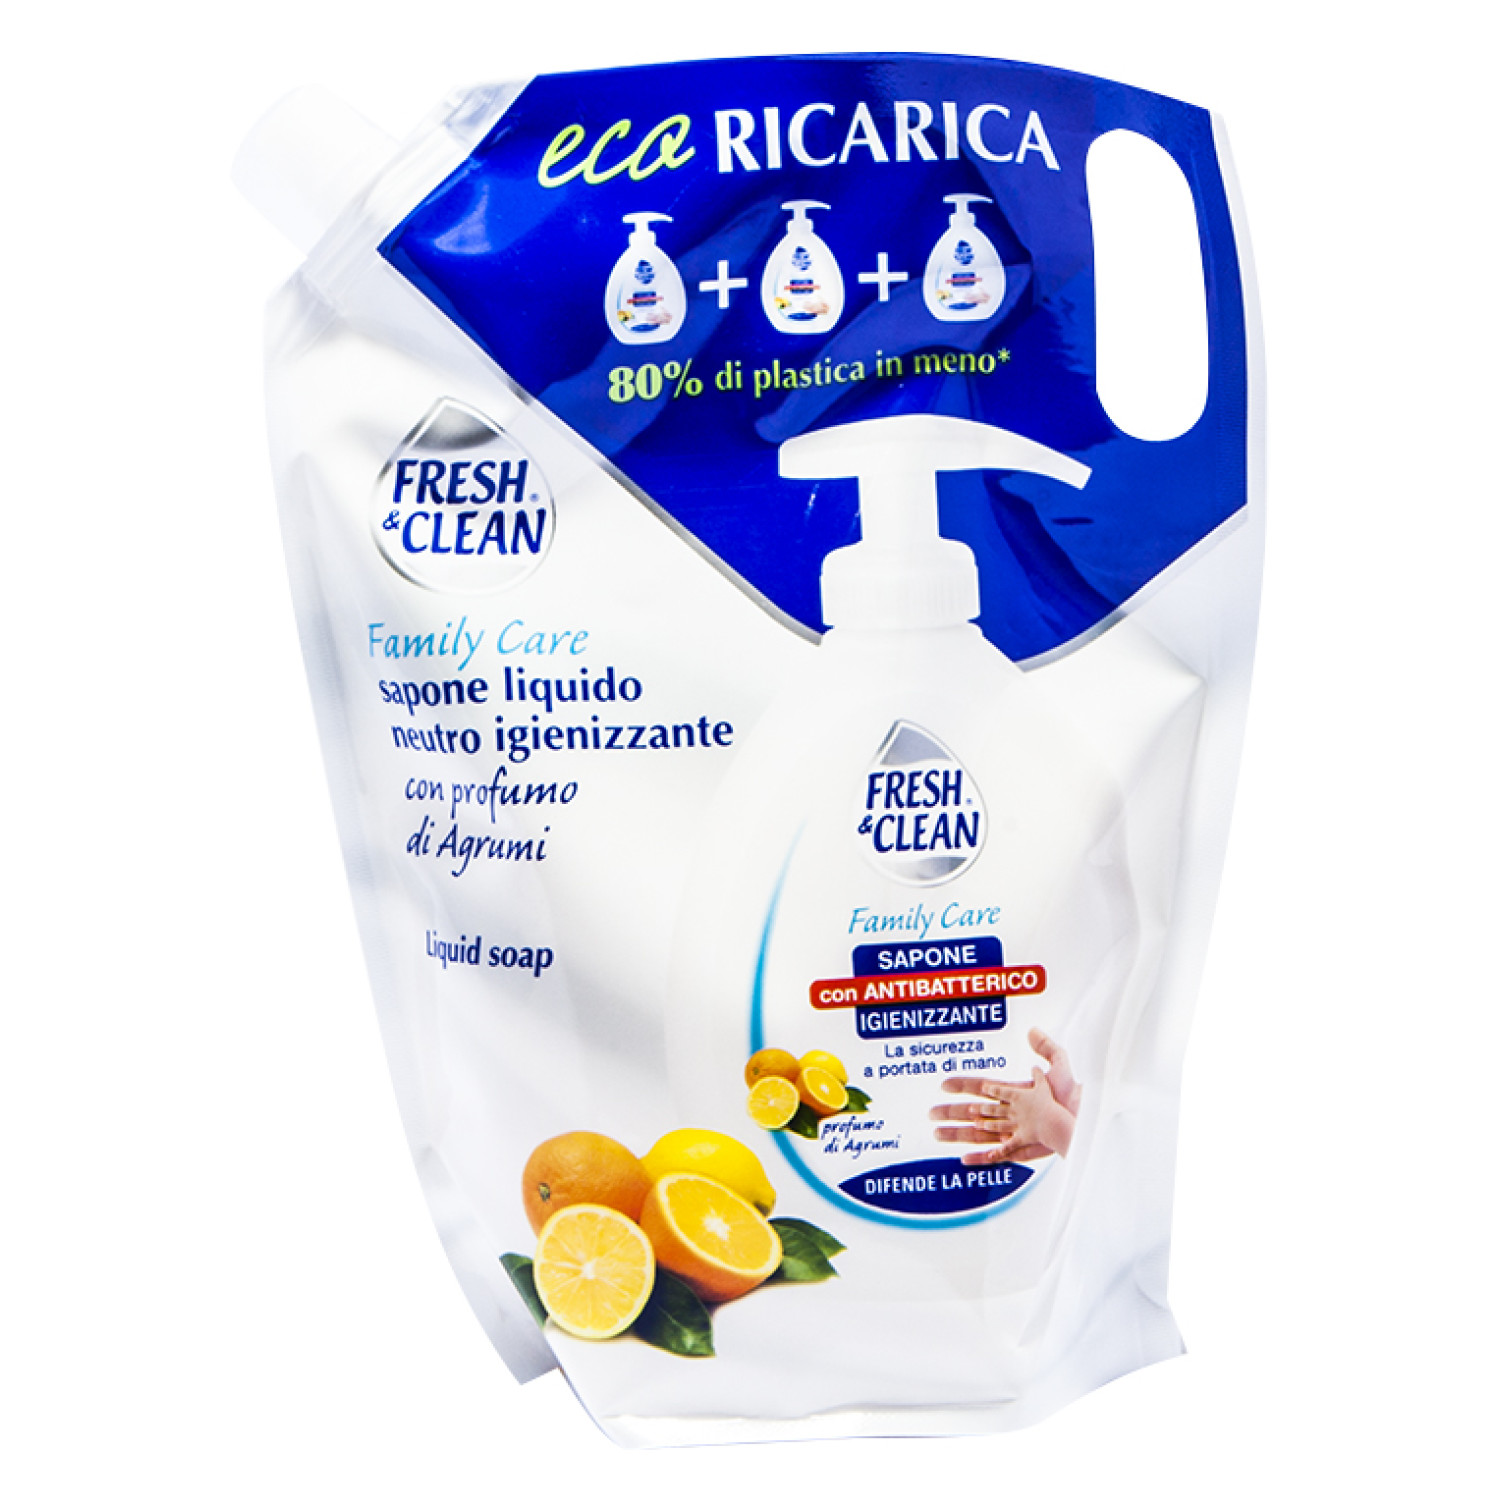 Fresh&Clean Sapone Liquido Igienizzante al profumo di agrumi Eco Ricarica 900ML